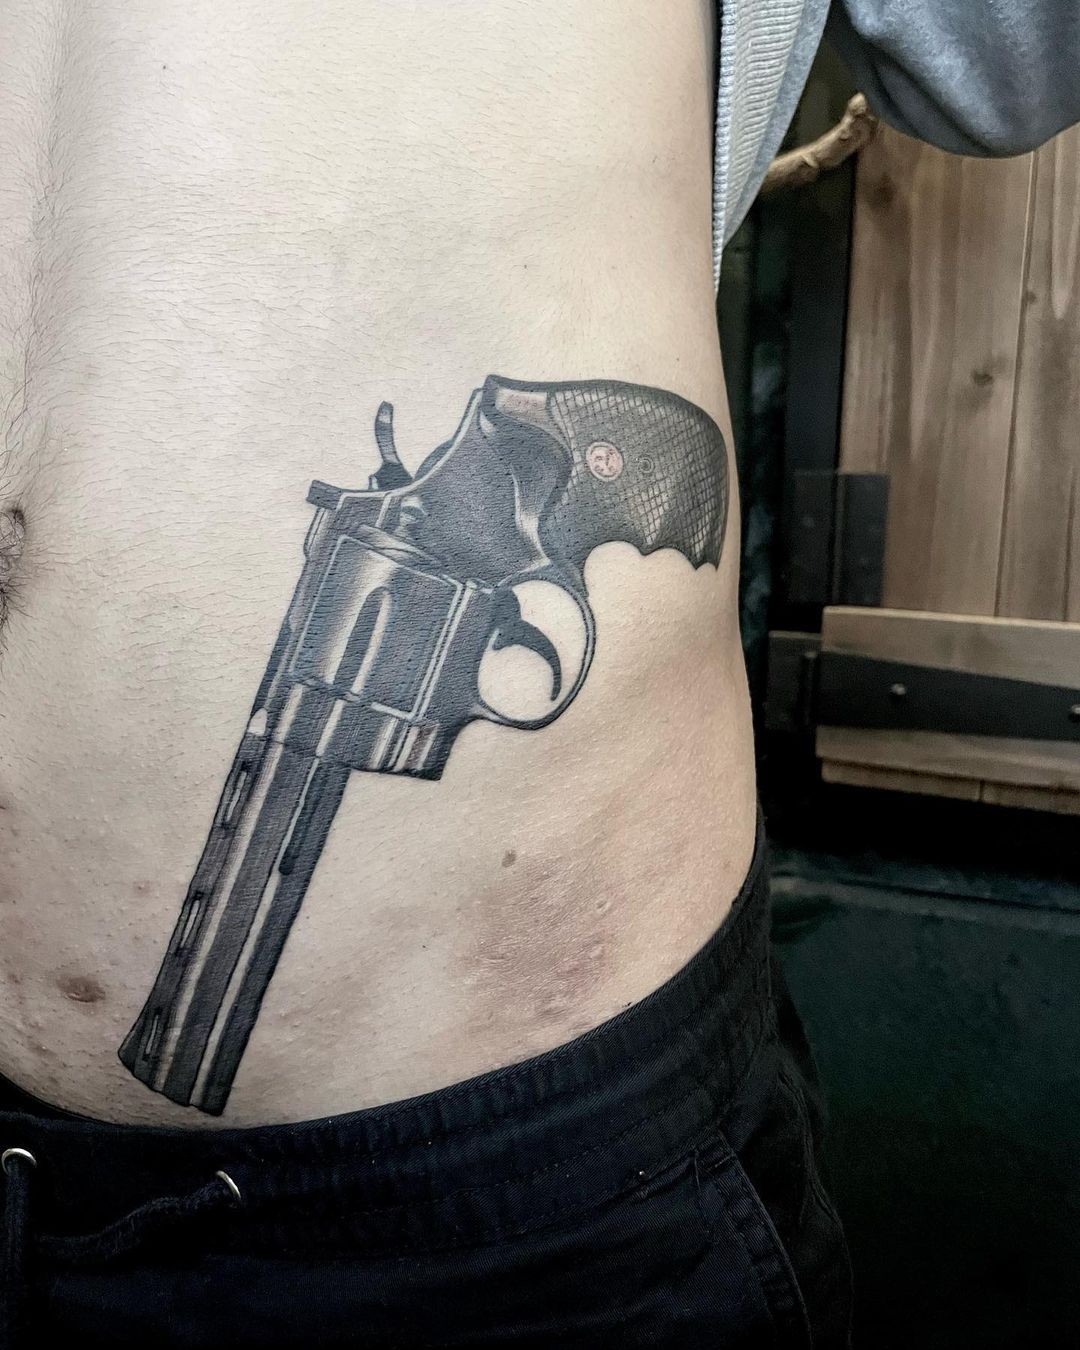 Black Ink Gun Tattoo